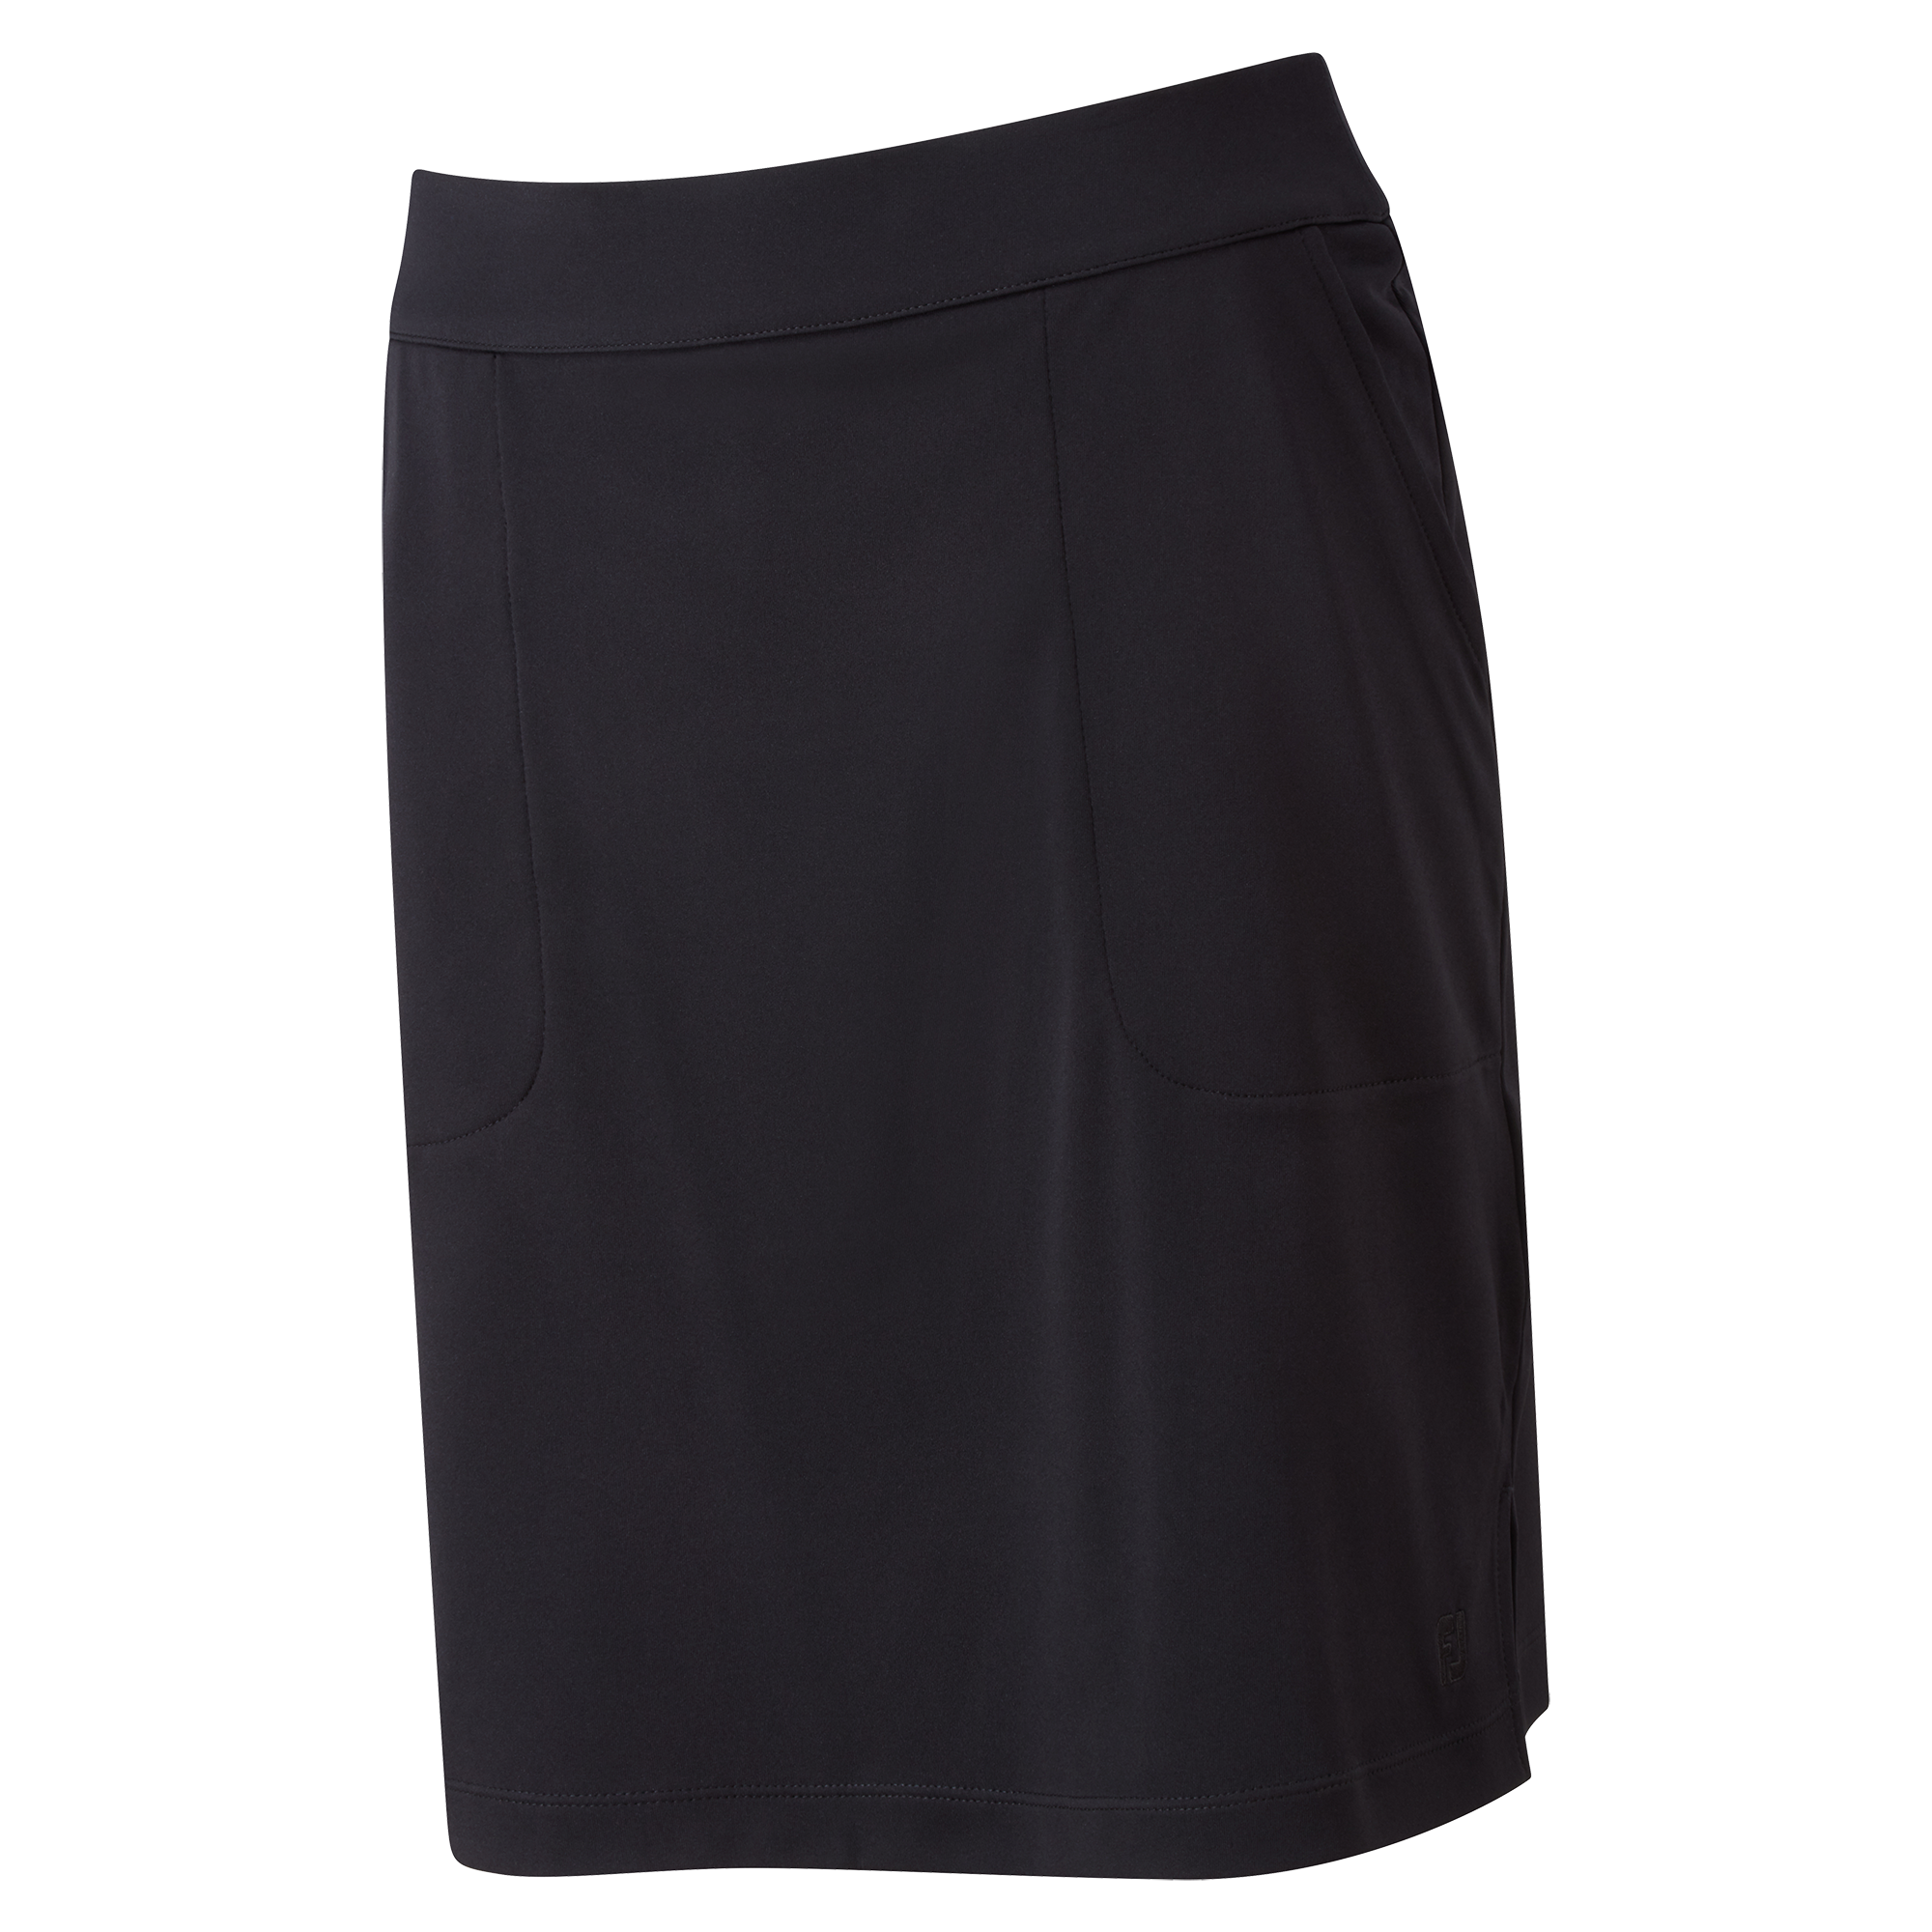 FootJoy Interlock Stretch Long dámská golfová sukně, černá, vel. M